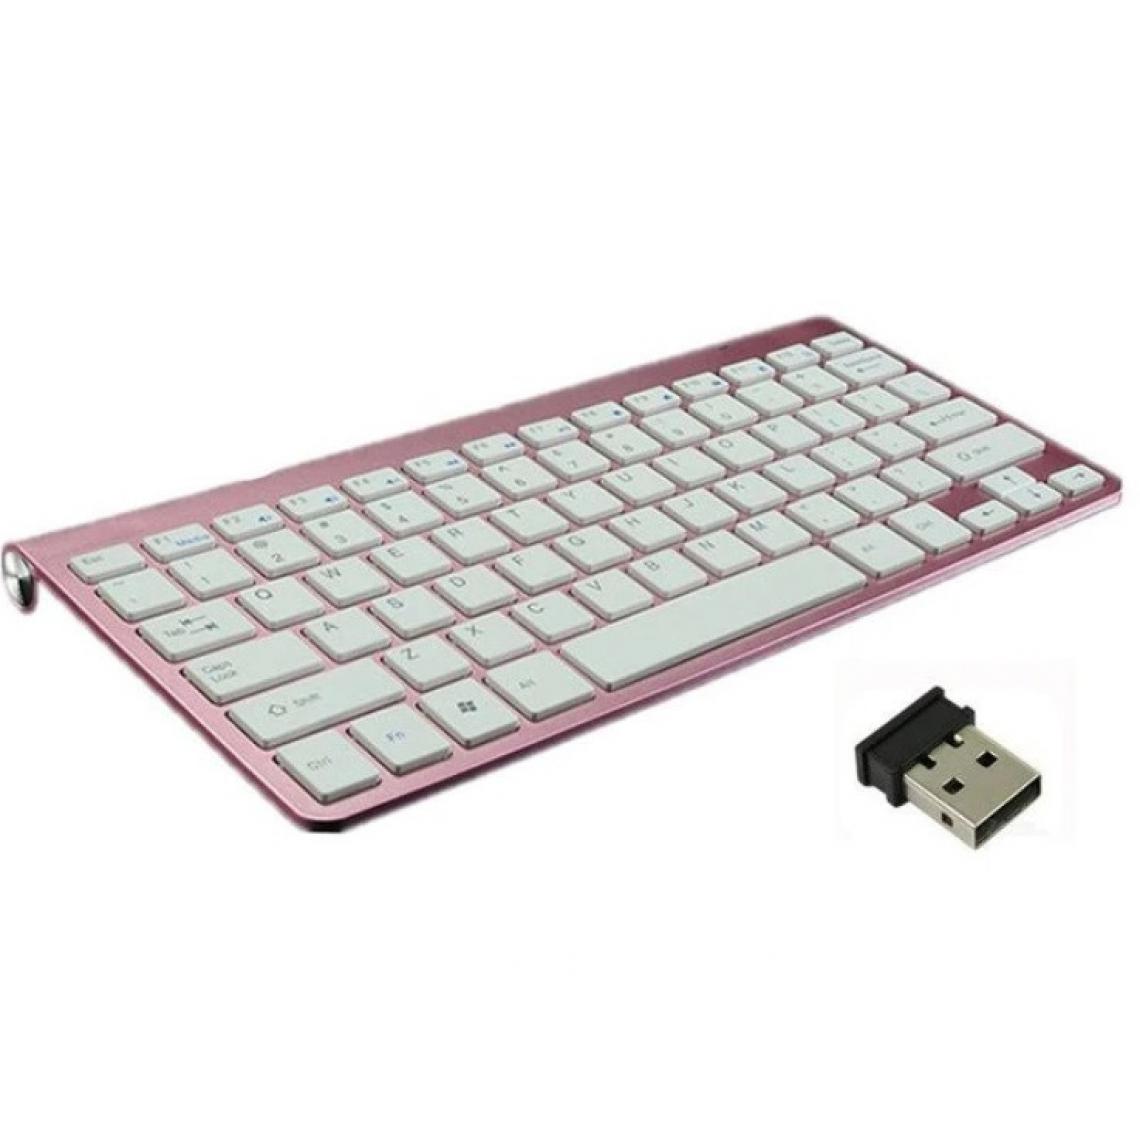 Shot - Clavier Sans Fil Metal pour PC MSI USB QWERTY Piles (ROSE) - Clavier